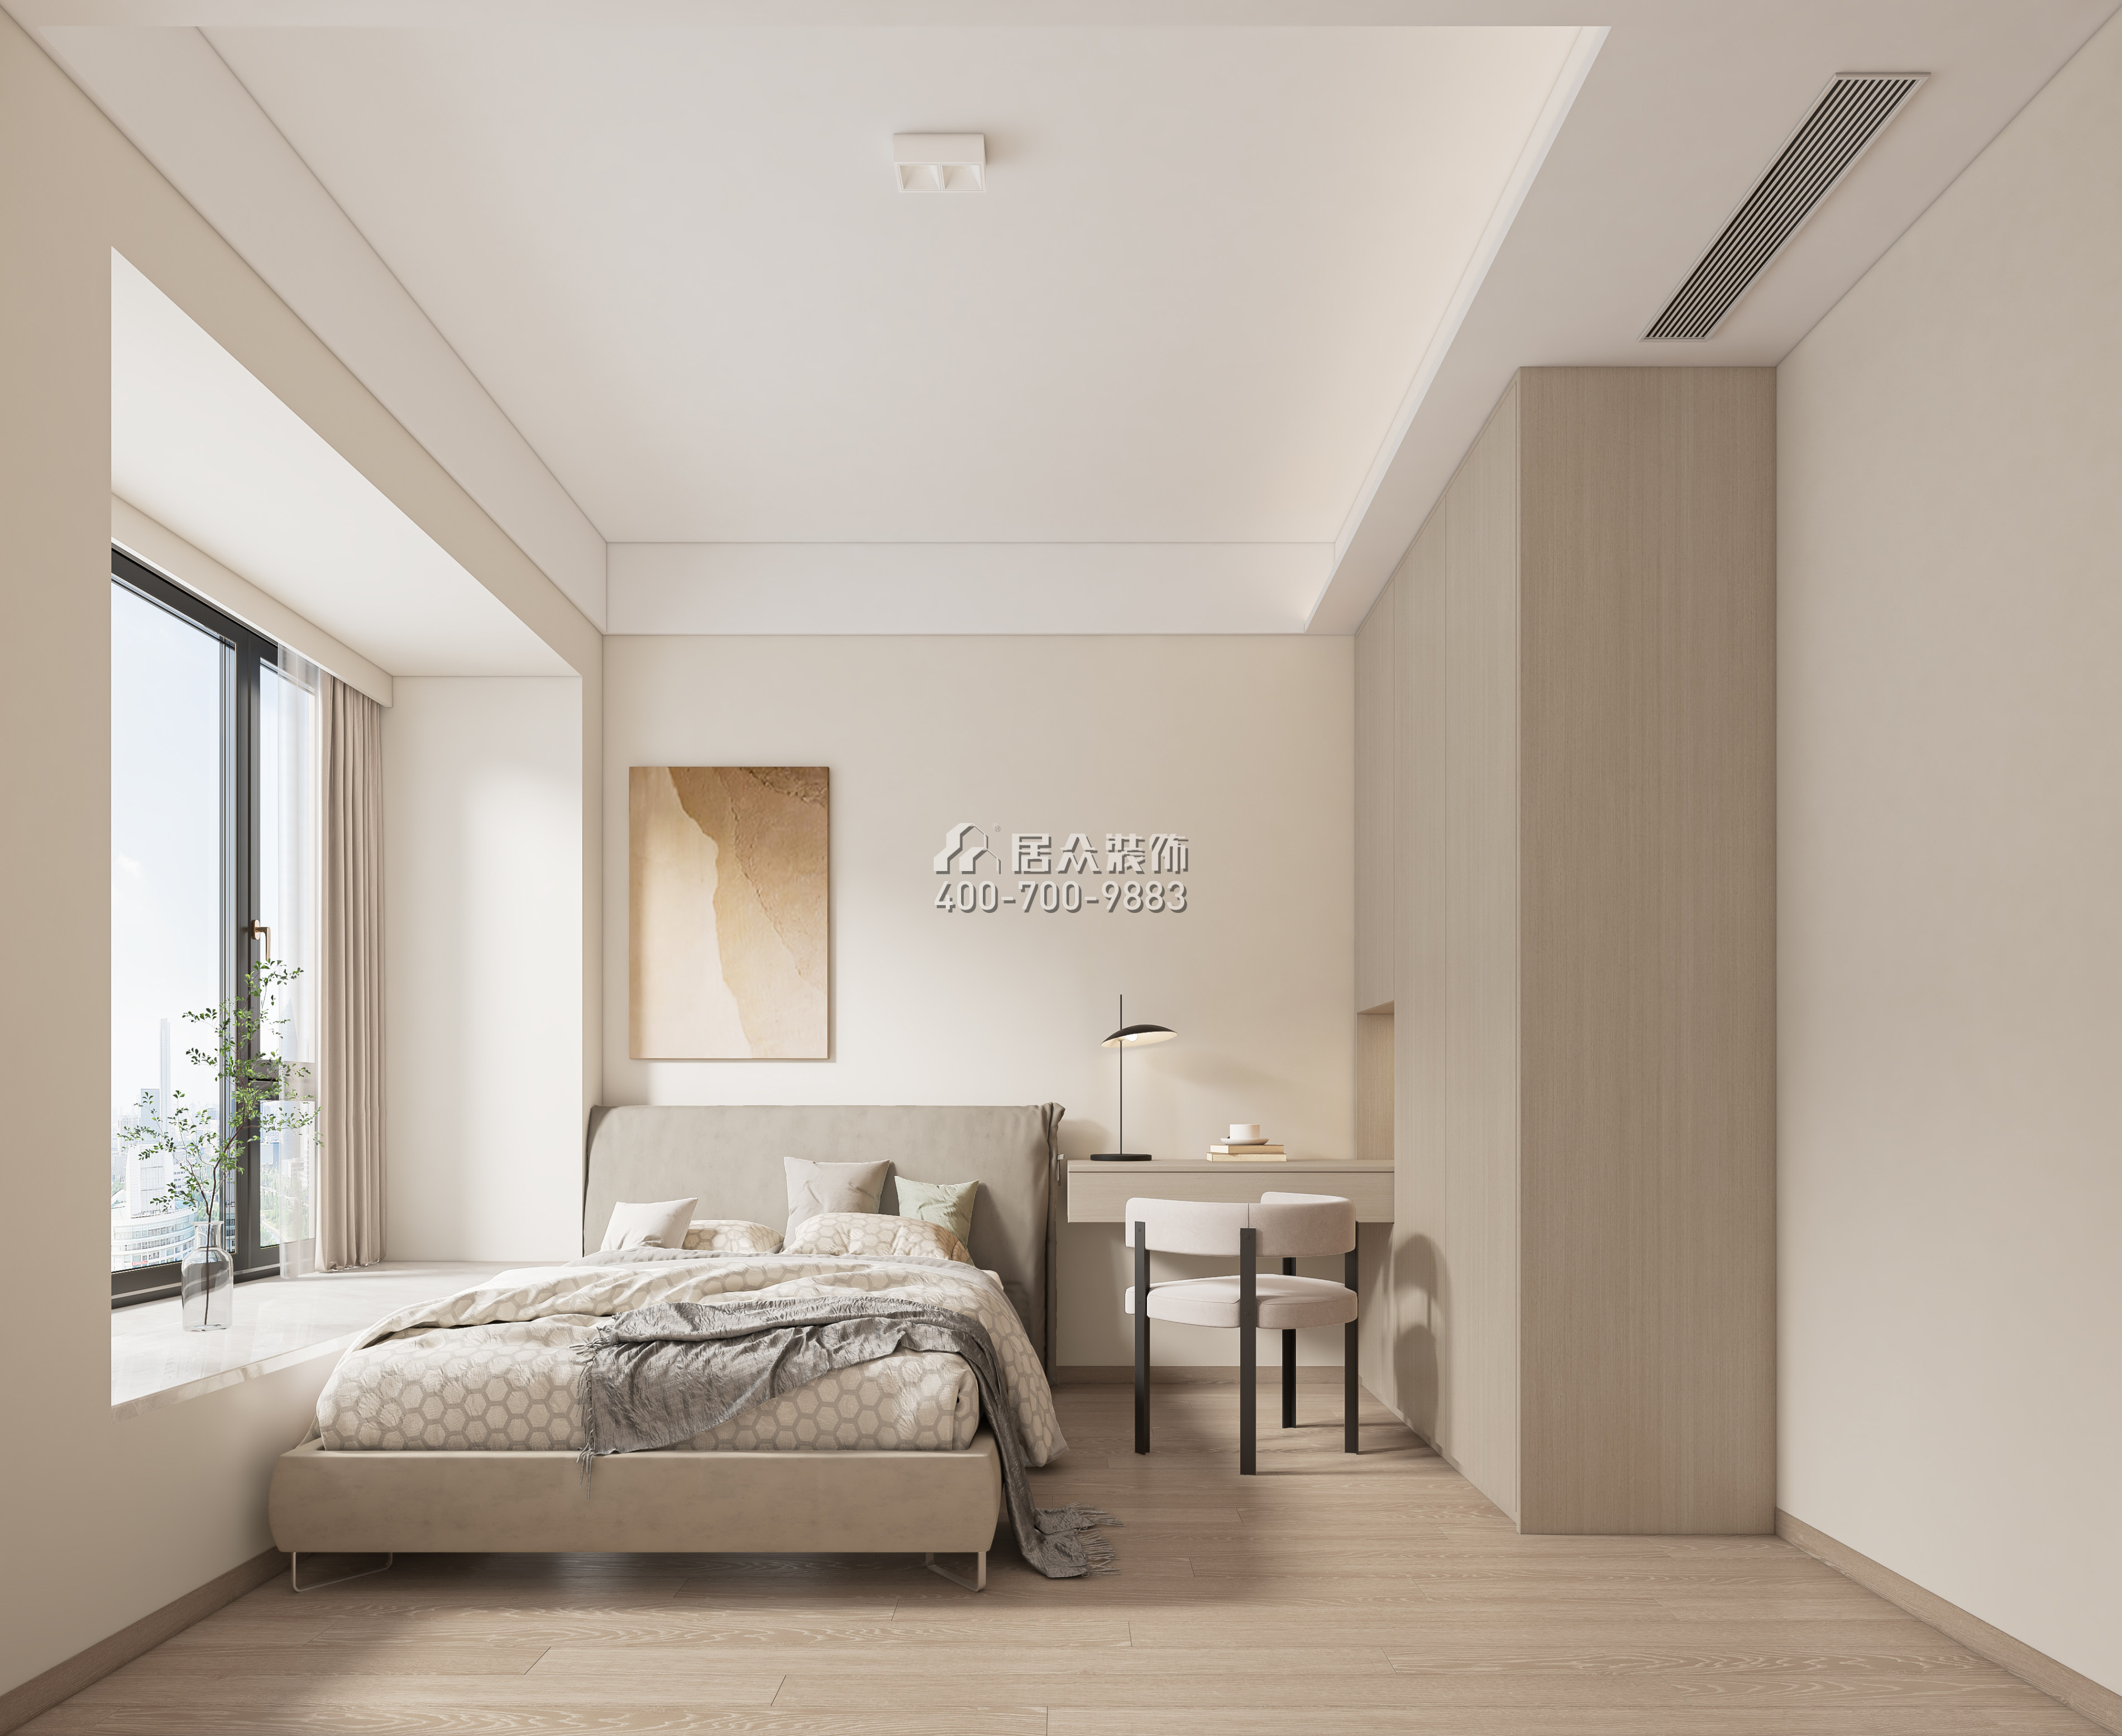 天鹅湖花园三期122平方米现代简约风格平层户型卧室装修效果图